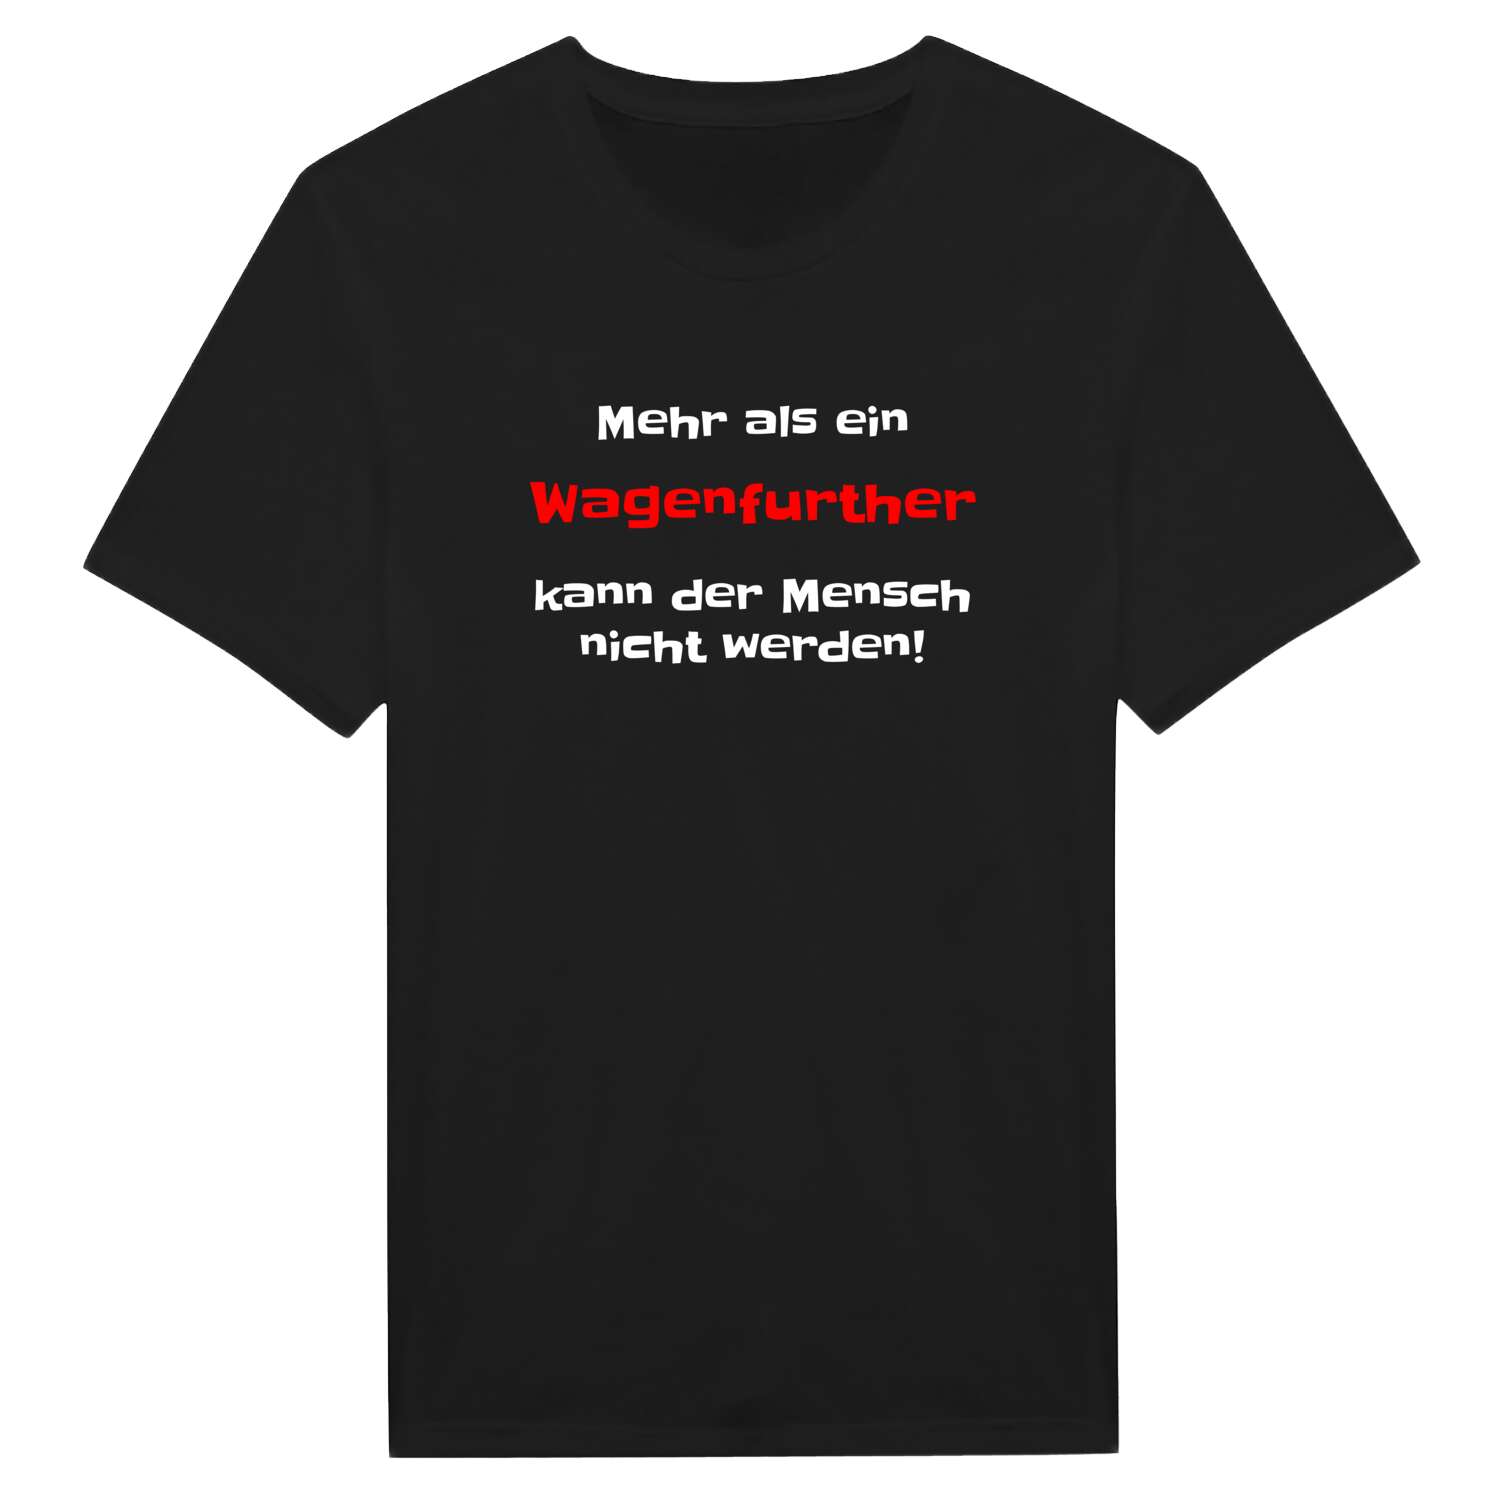 Wagenfurth T-Shirt »Mehr als ein«